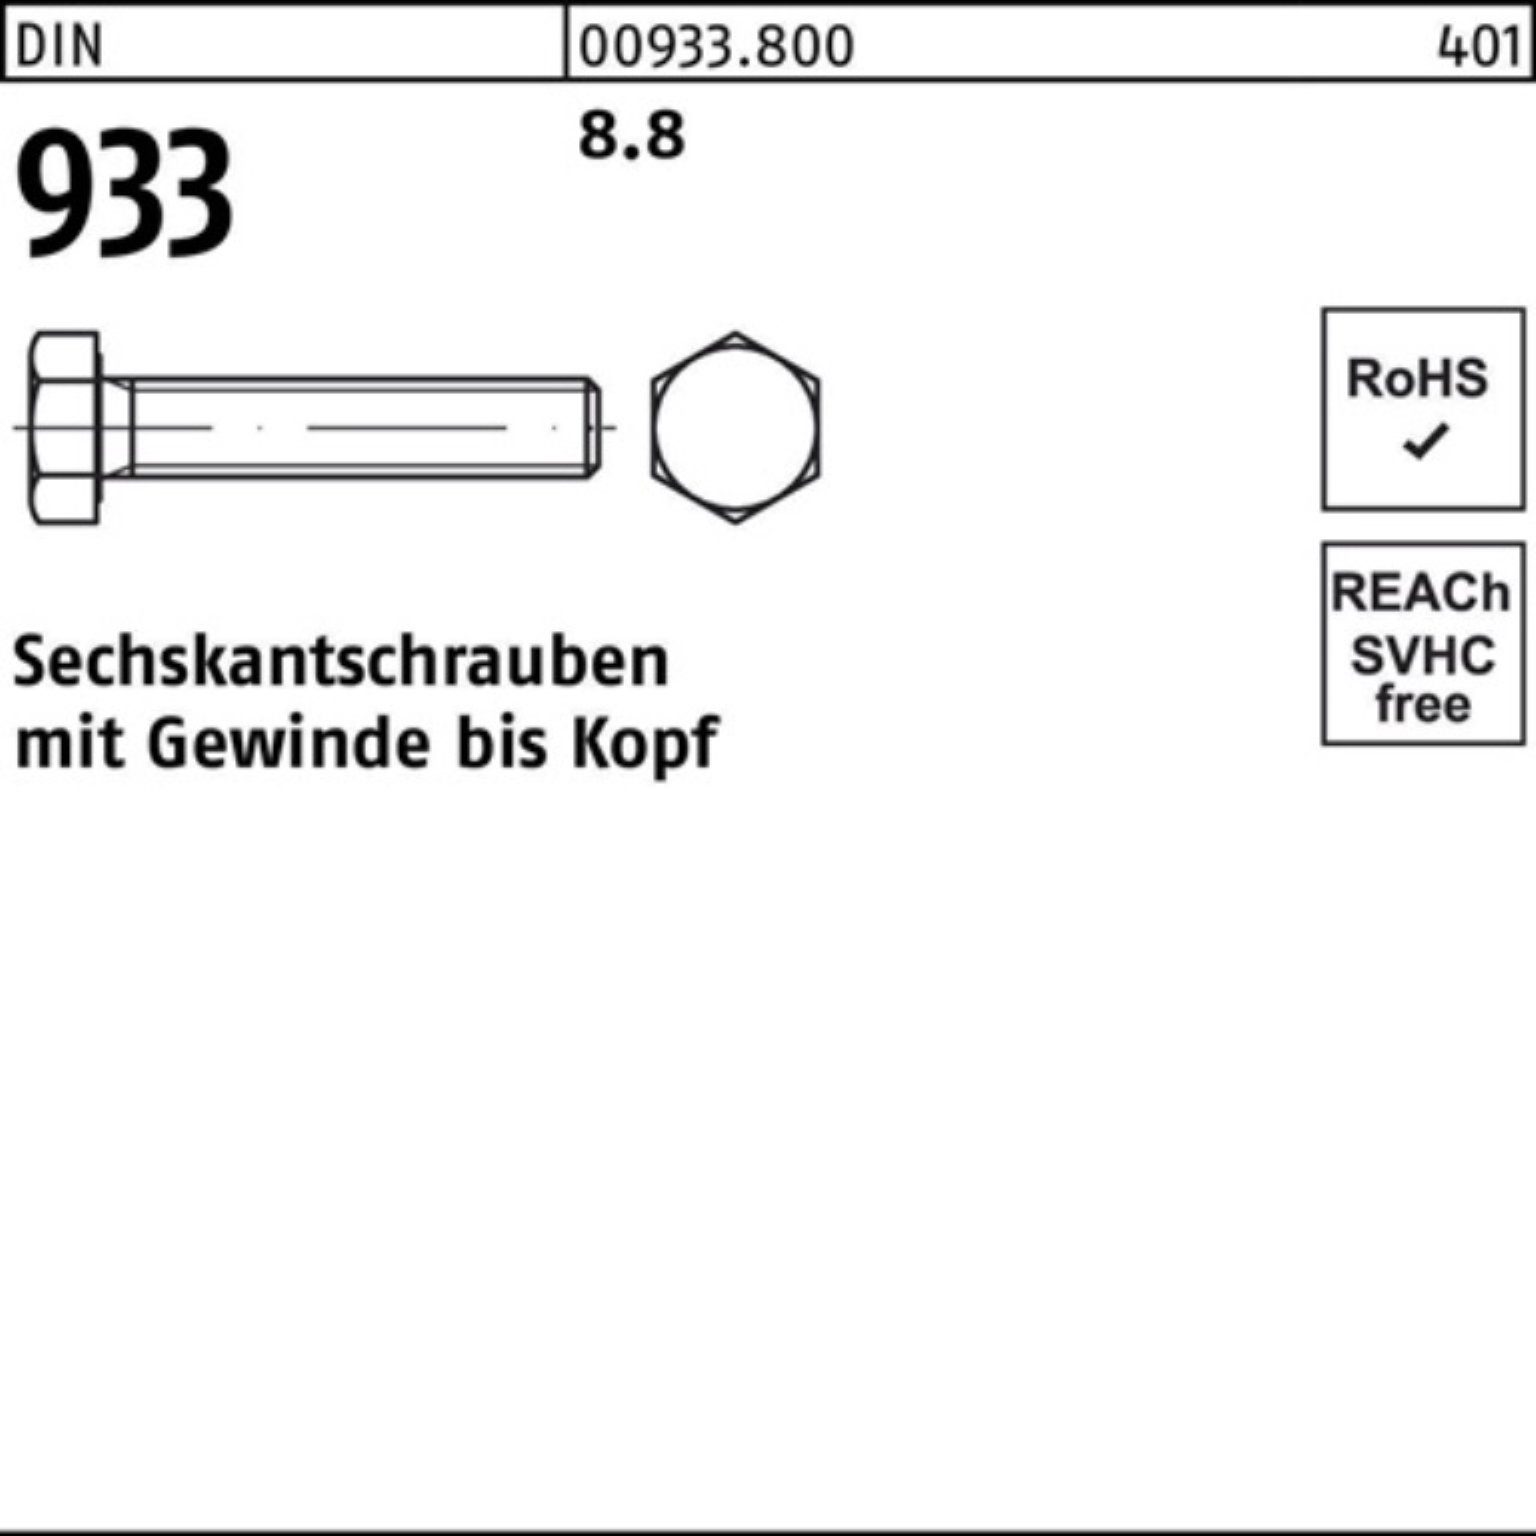 Reyher Sechskantschraube 100er M42x 220 Stück VG Sechskantschraube Pack DIN 933 DIN 1 8.8 933